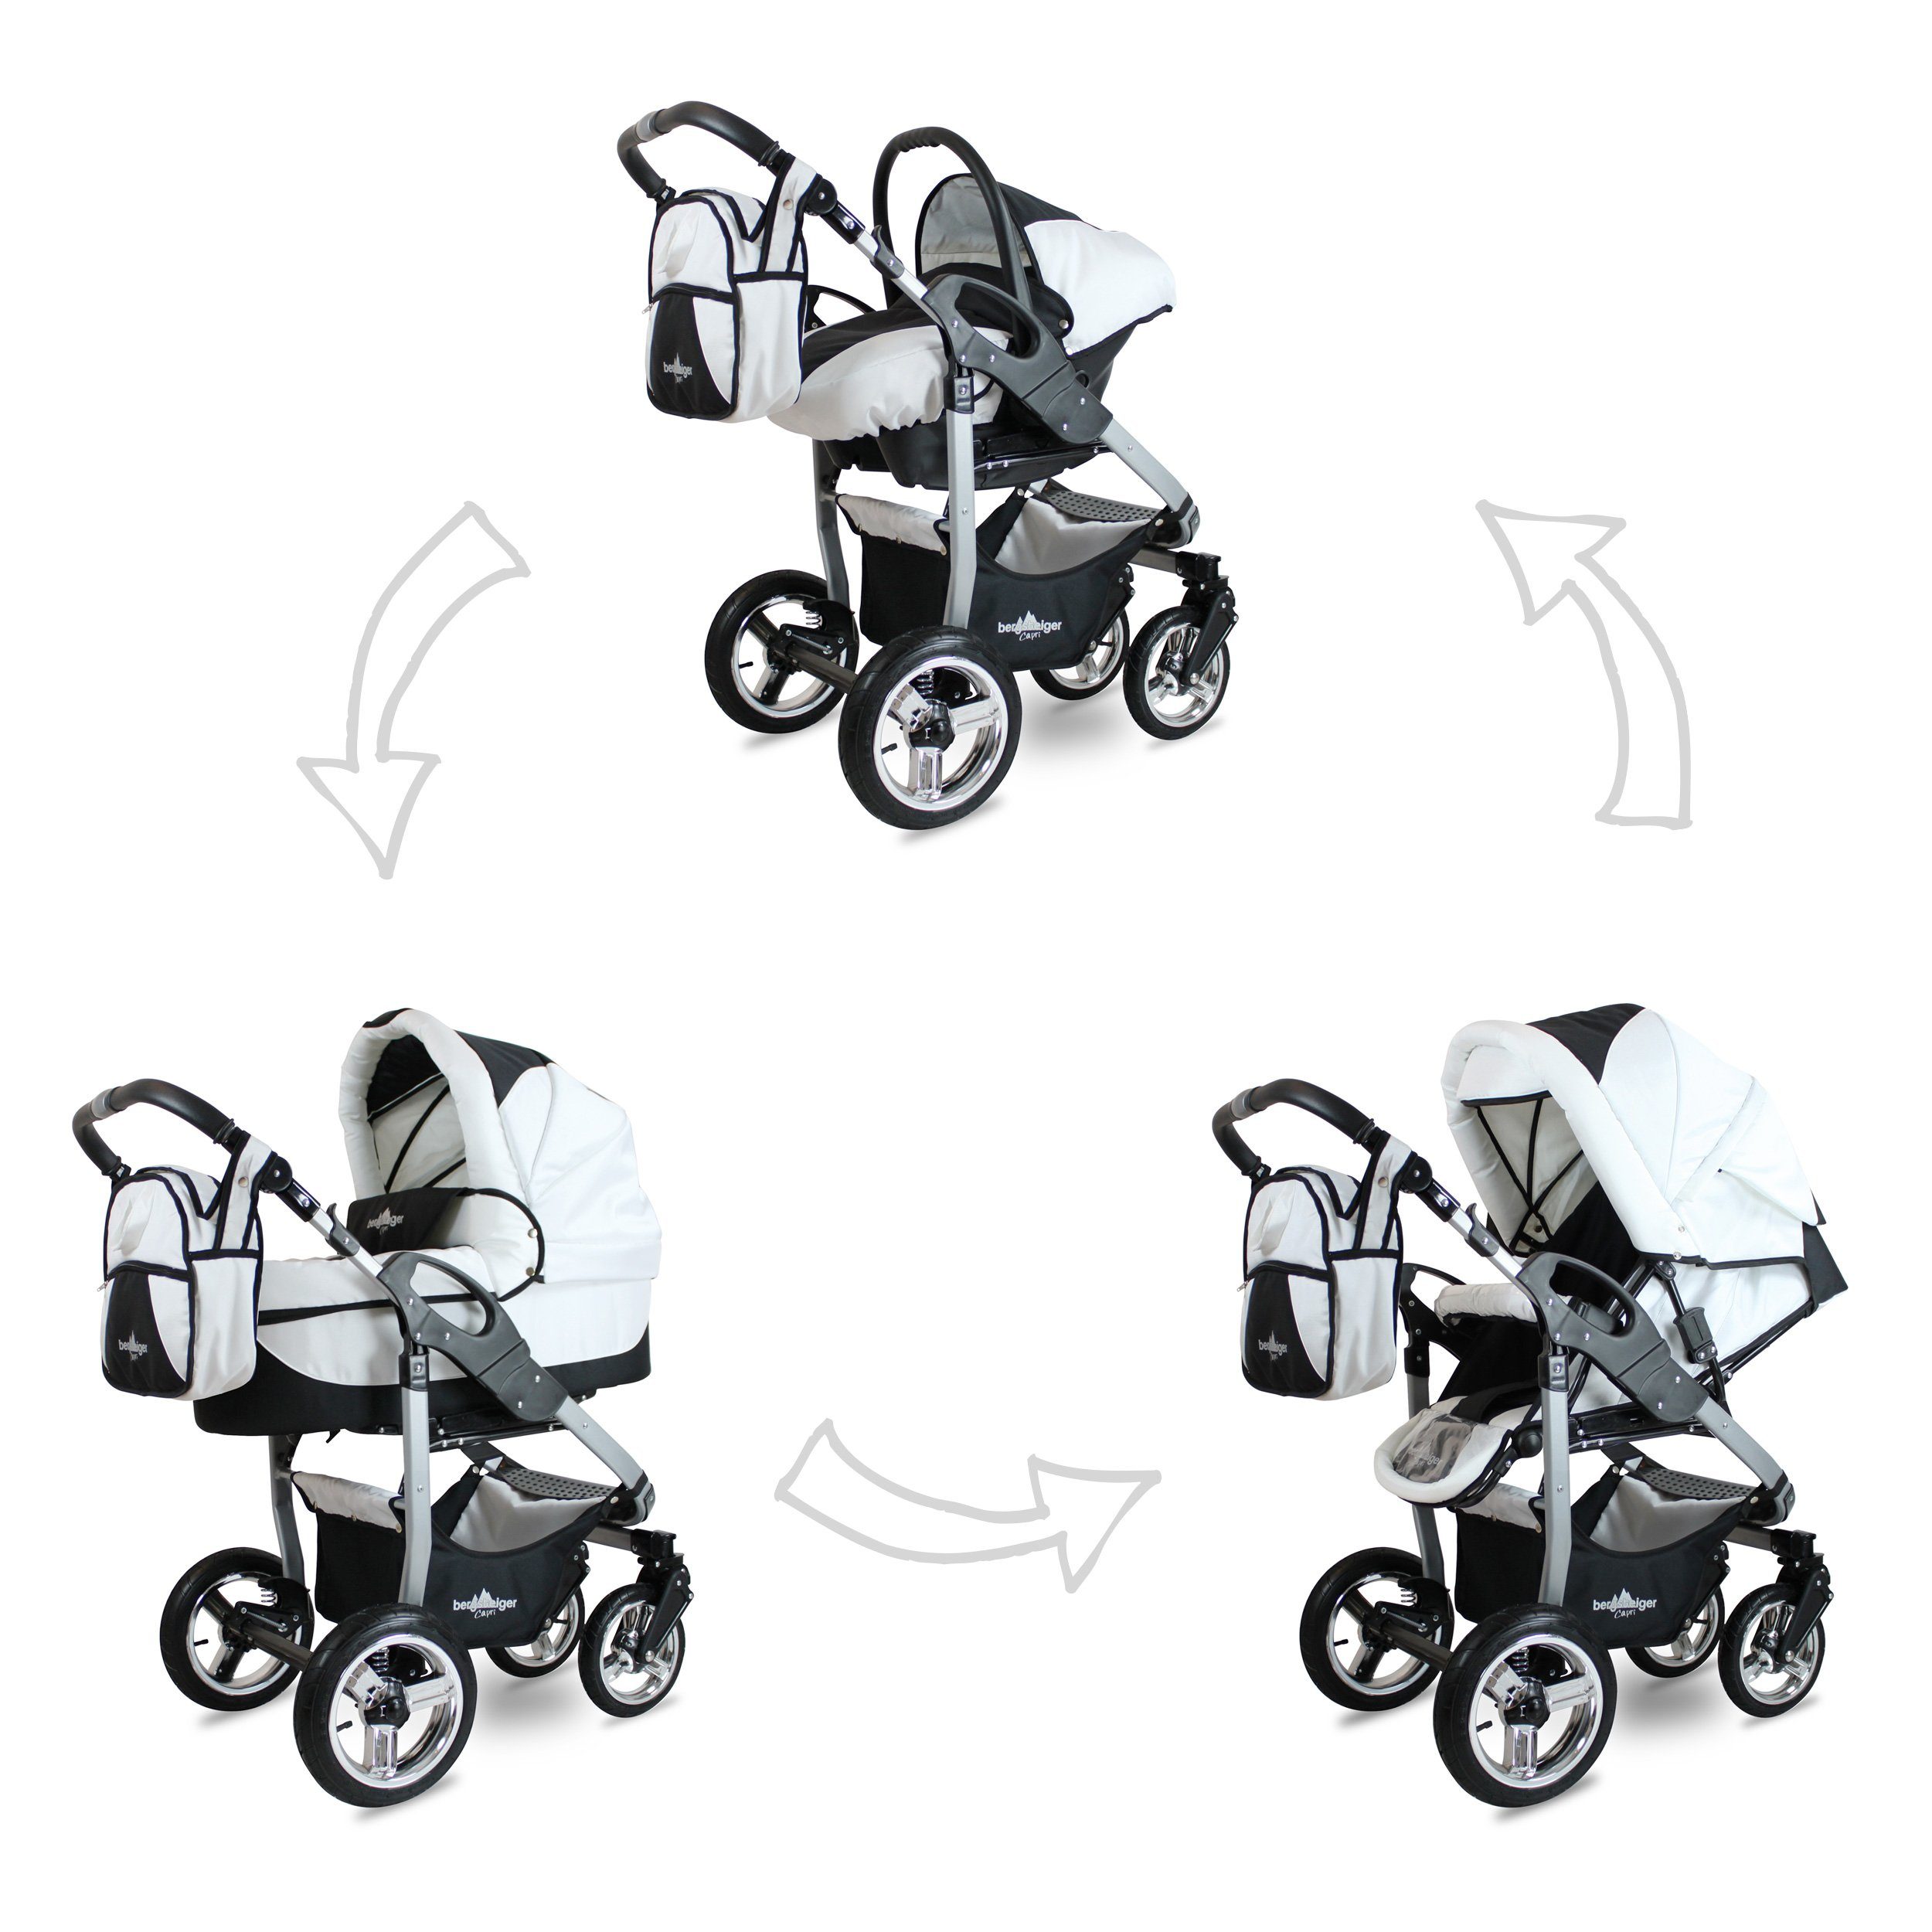 Kinder Kinderwagen bergsteiger Kombi-Kinderwagen Babywagen Capri 3in1, Kombikinderwagen Komplettset inkl. Zubehör - Babyschale, 